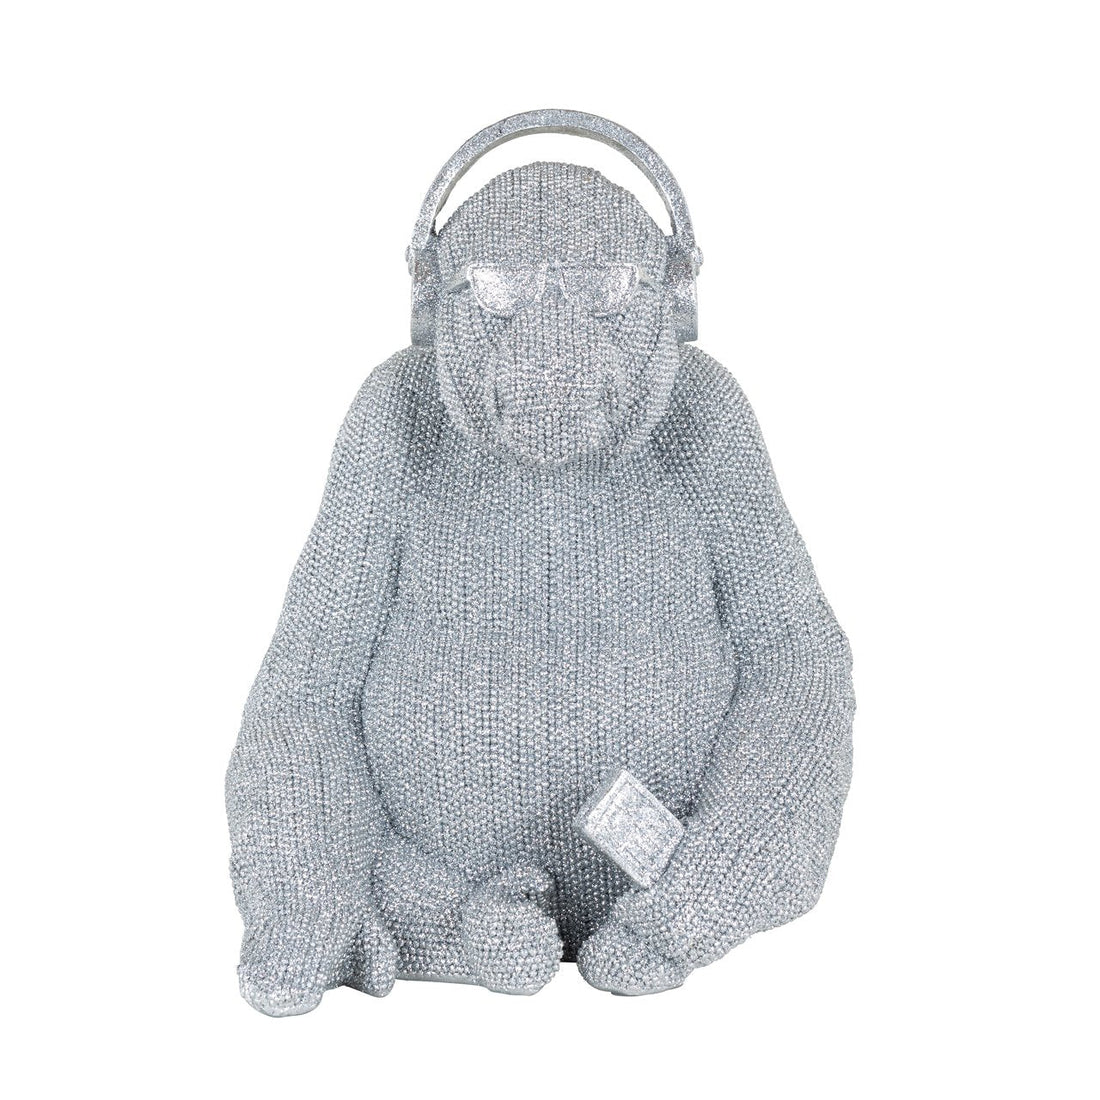 Vooraanzicht: zilverkleurig beeldje van zittende gorilla  met koptelefoon en zonnebril